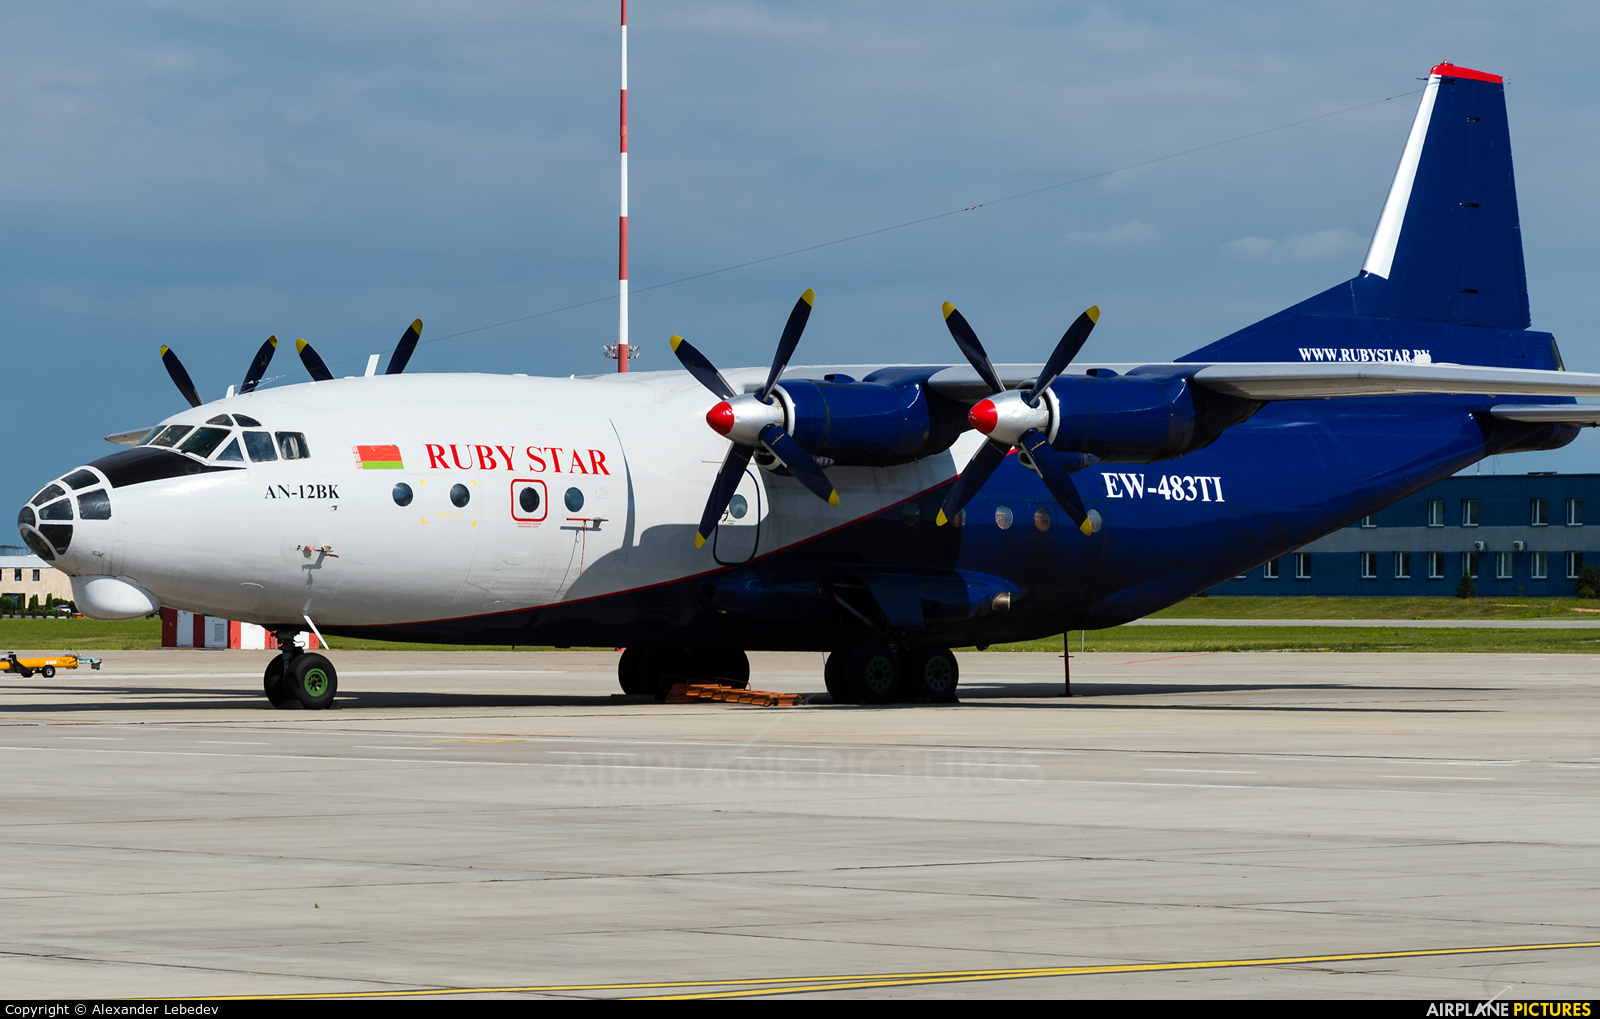 Ruby Star Air Enterprise EW-483TI aircraft at Minsk Intl